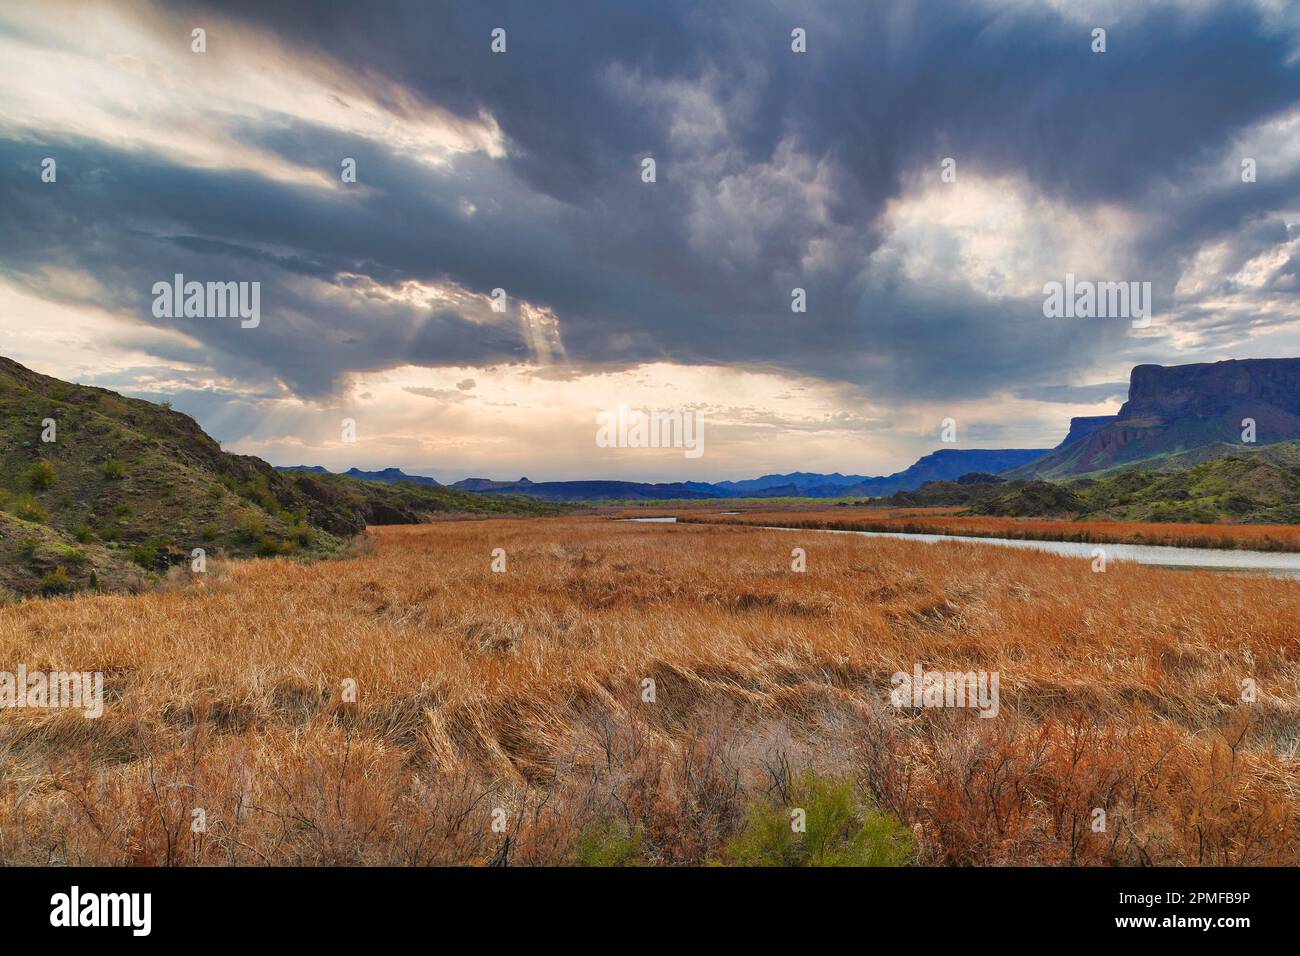 La valle e le zone umide del fiume Bill Williams nel Bill Williams River National Wildlife Refuge, Arizona, USA, in una giornata nuvolosa Foto Stock